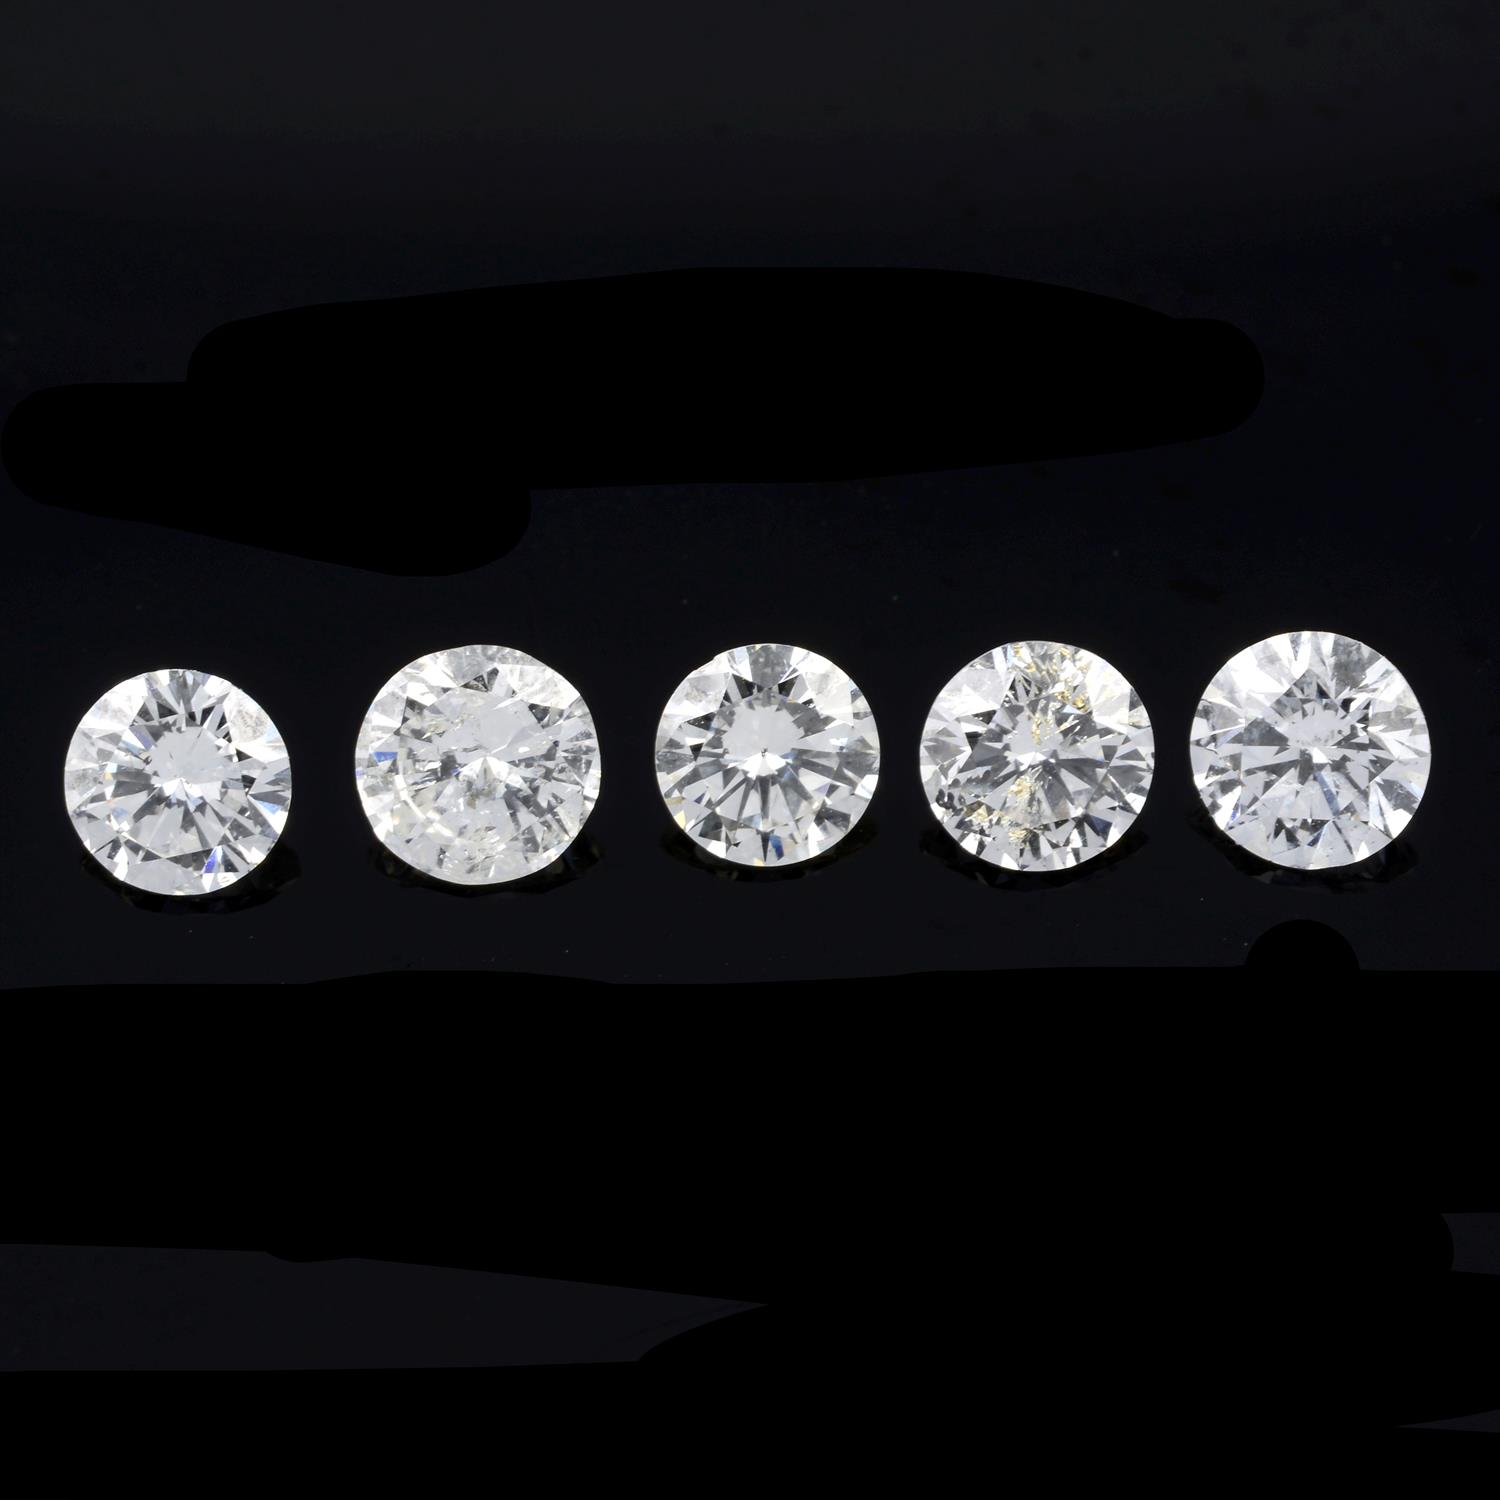 Five brilliant-cut diamonds, 1.36ct